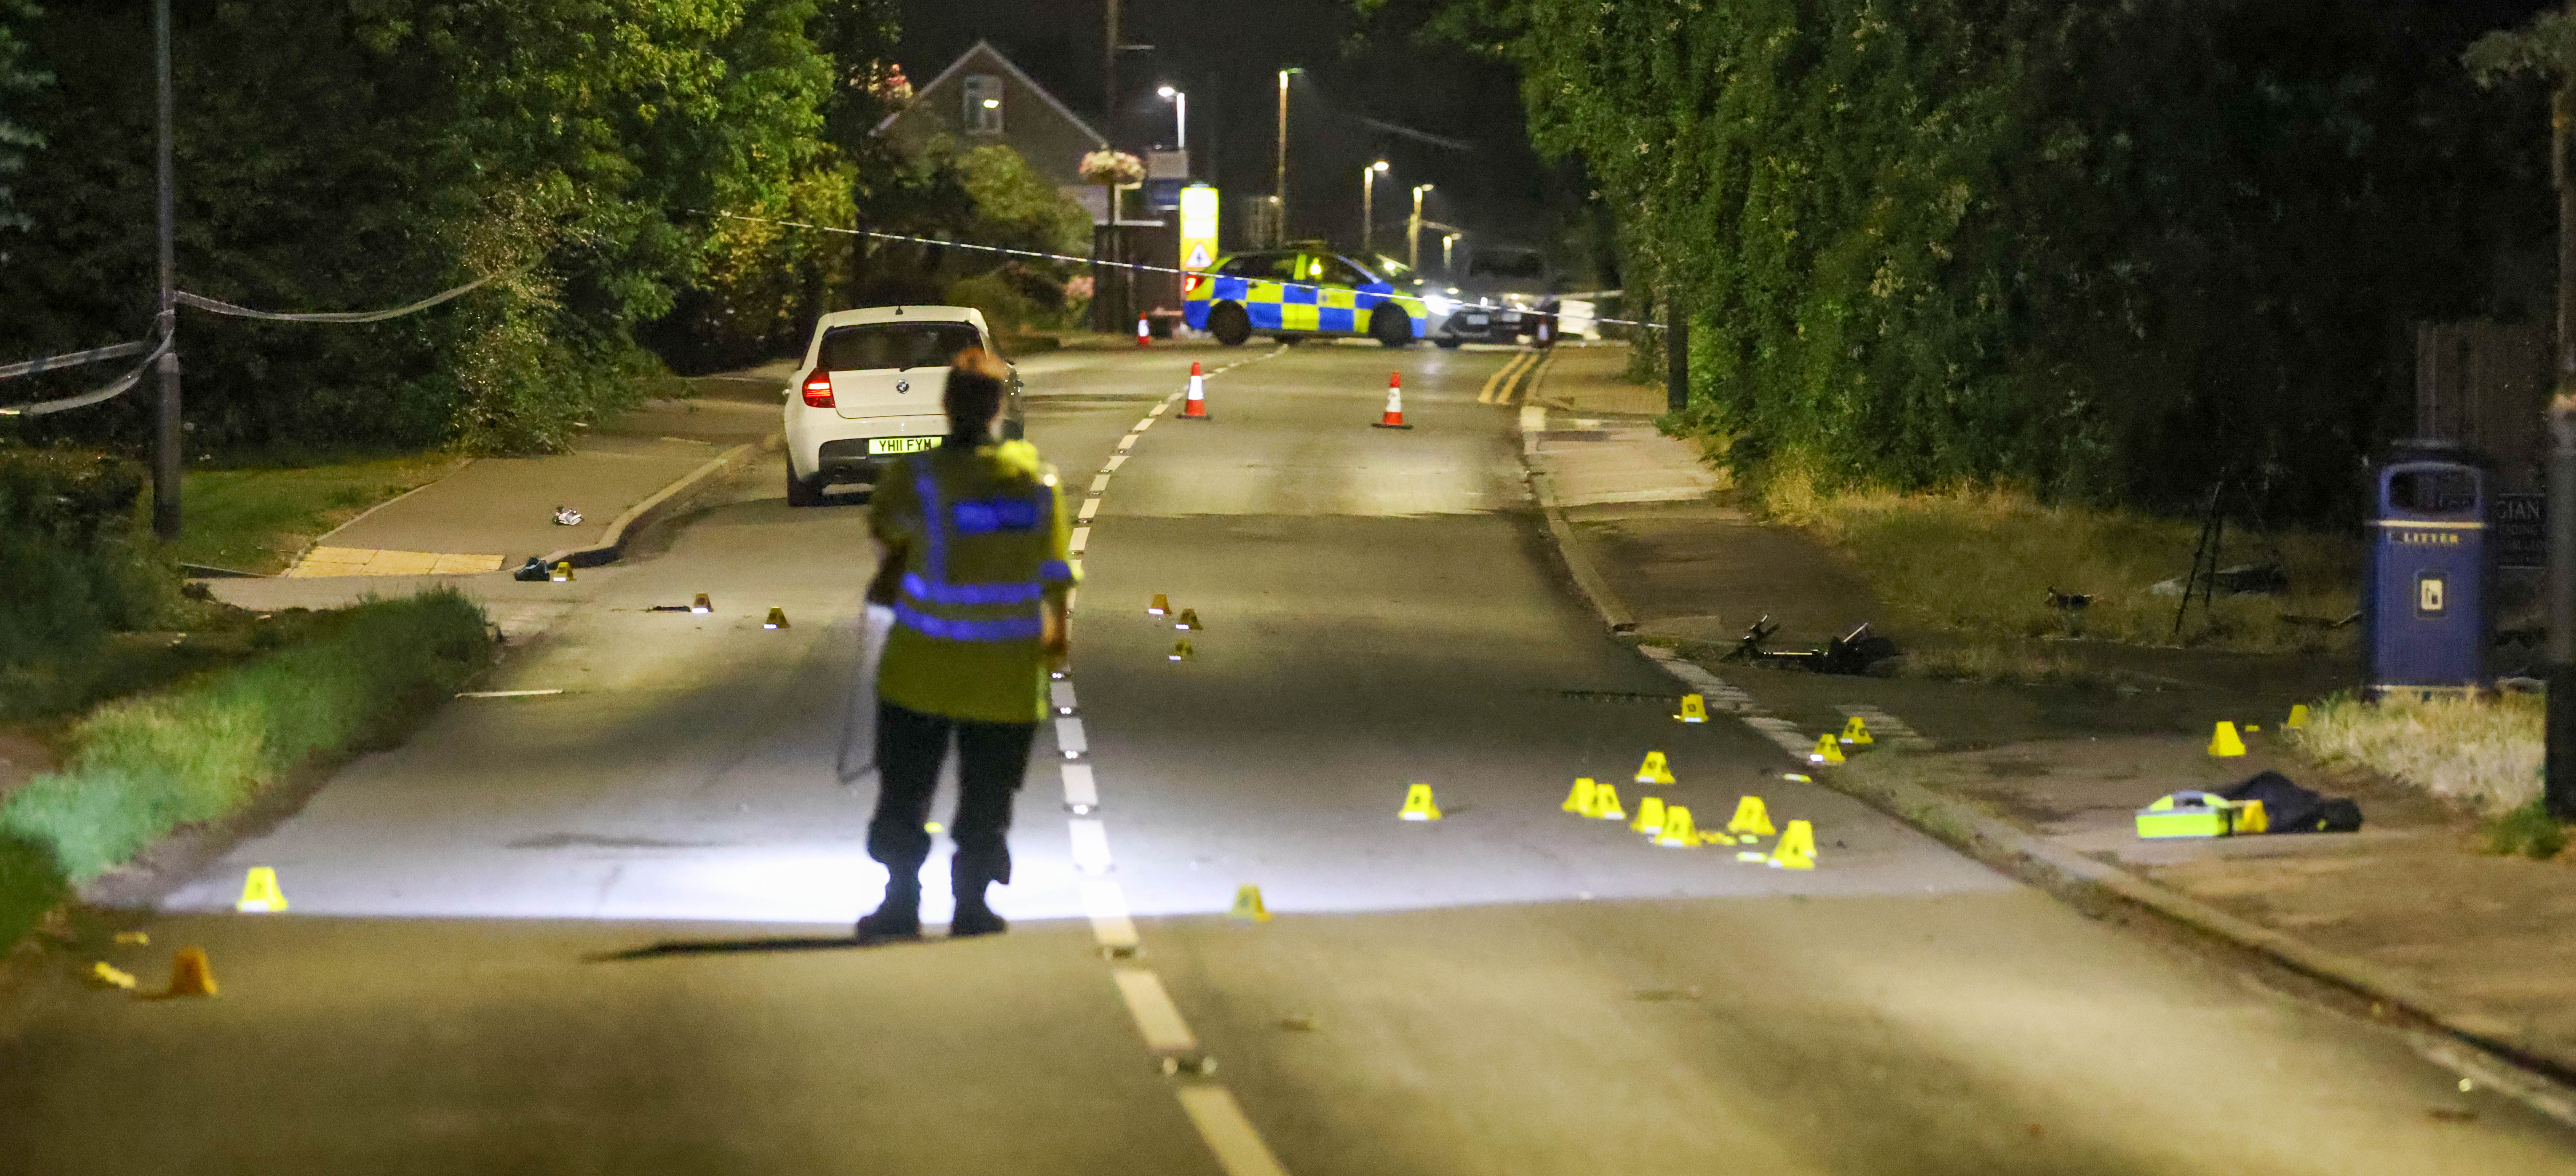 Die Polizei untersucht den Unfall, der sich gegen 22 Uhr in der Nähe von Maidstone, Kent, ereignete